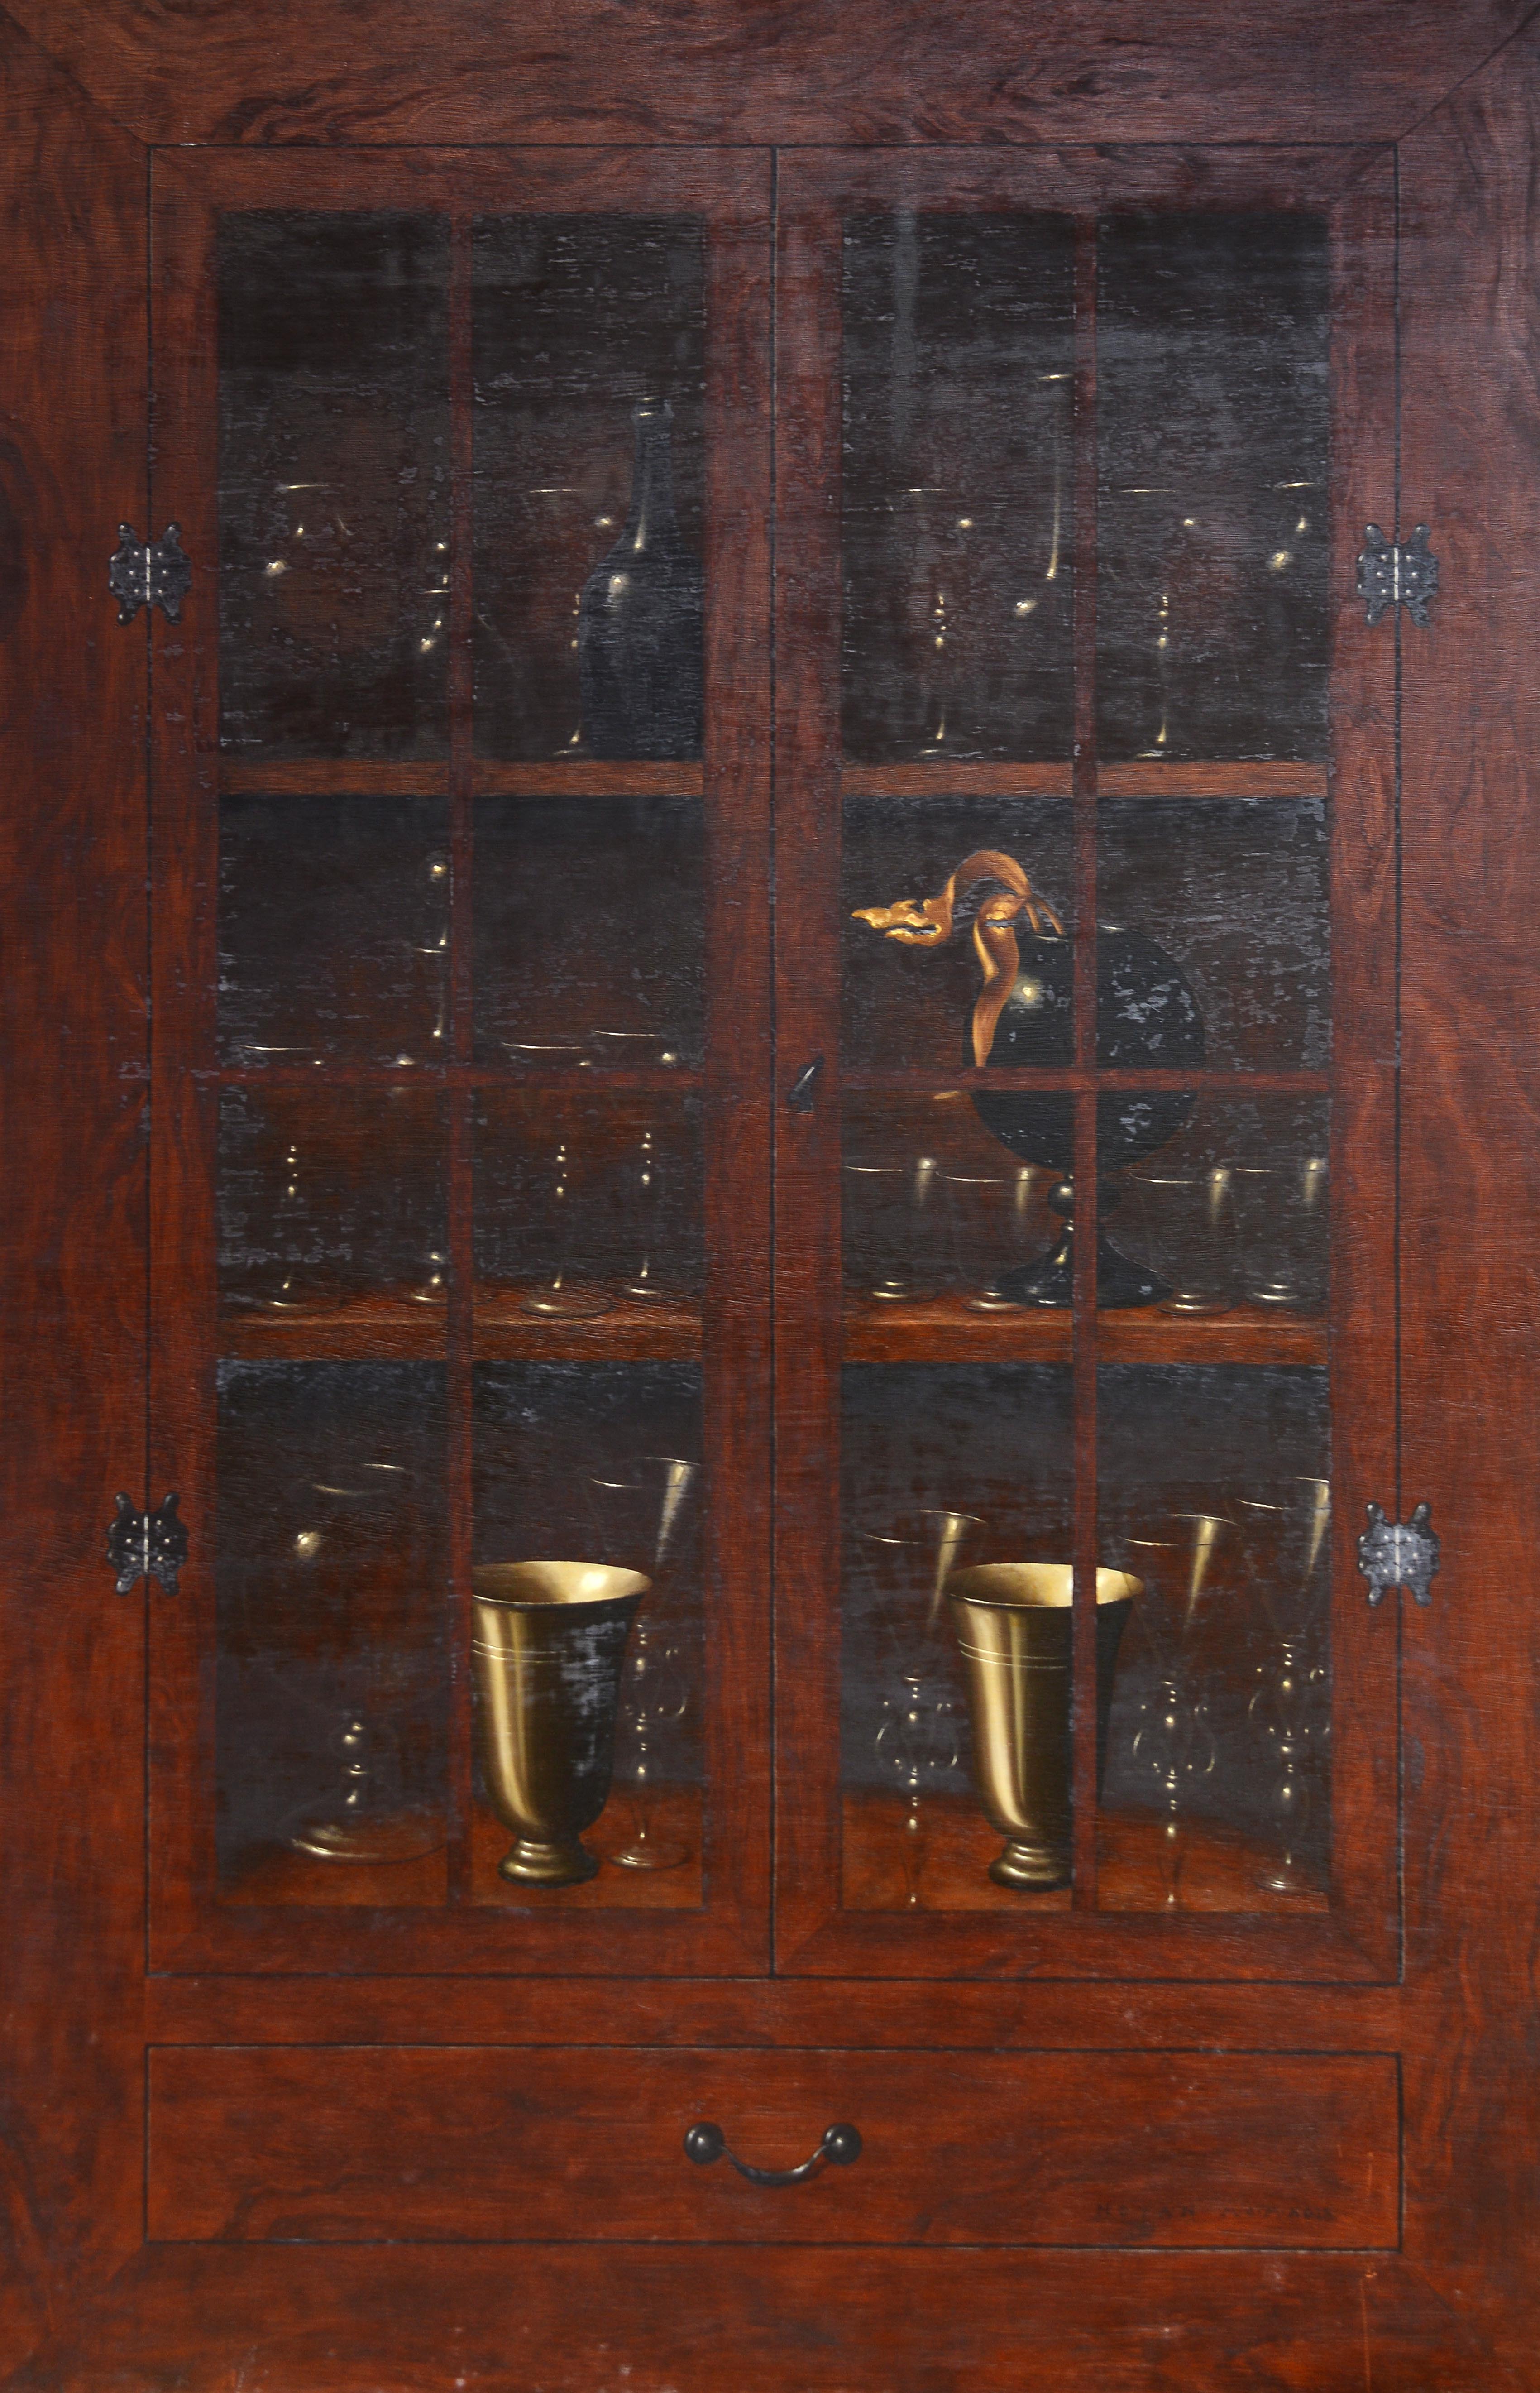 İsimsiz- Untitled, 1999, MDF üzerine yağlıboya- Oil on MDF, 124x80 cm